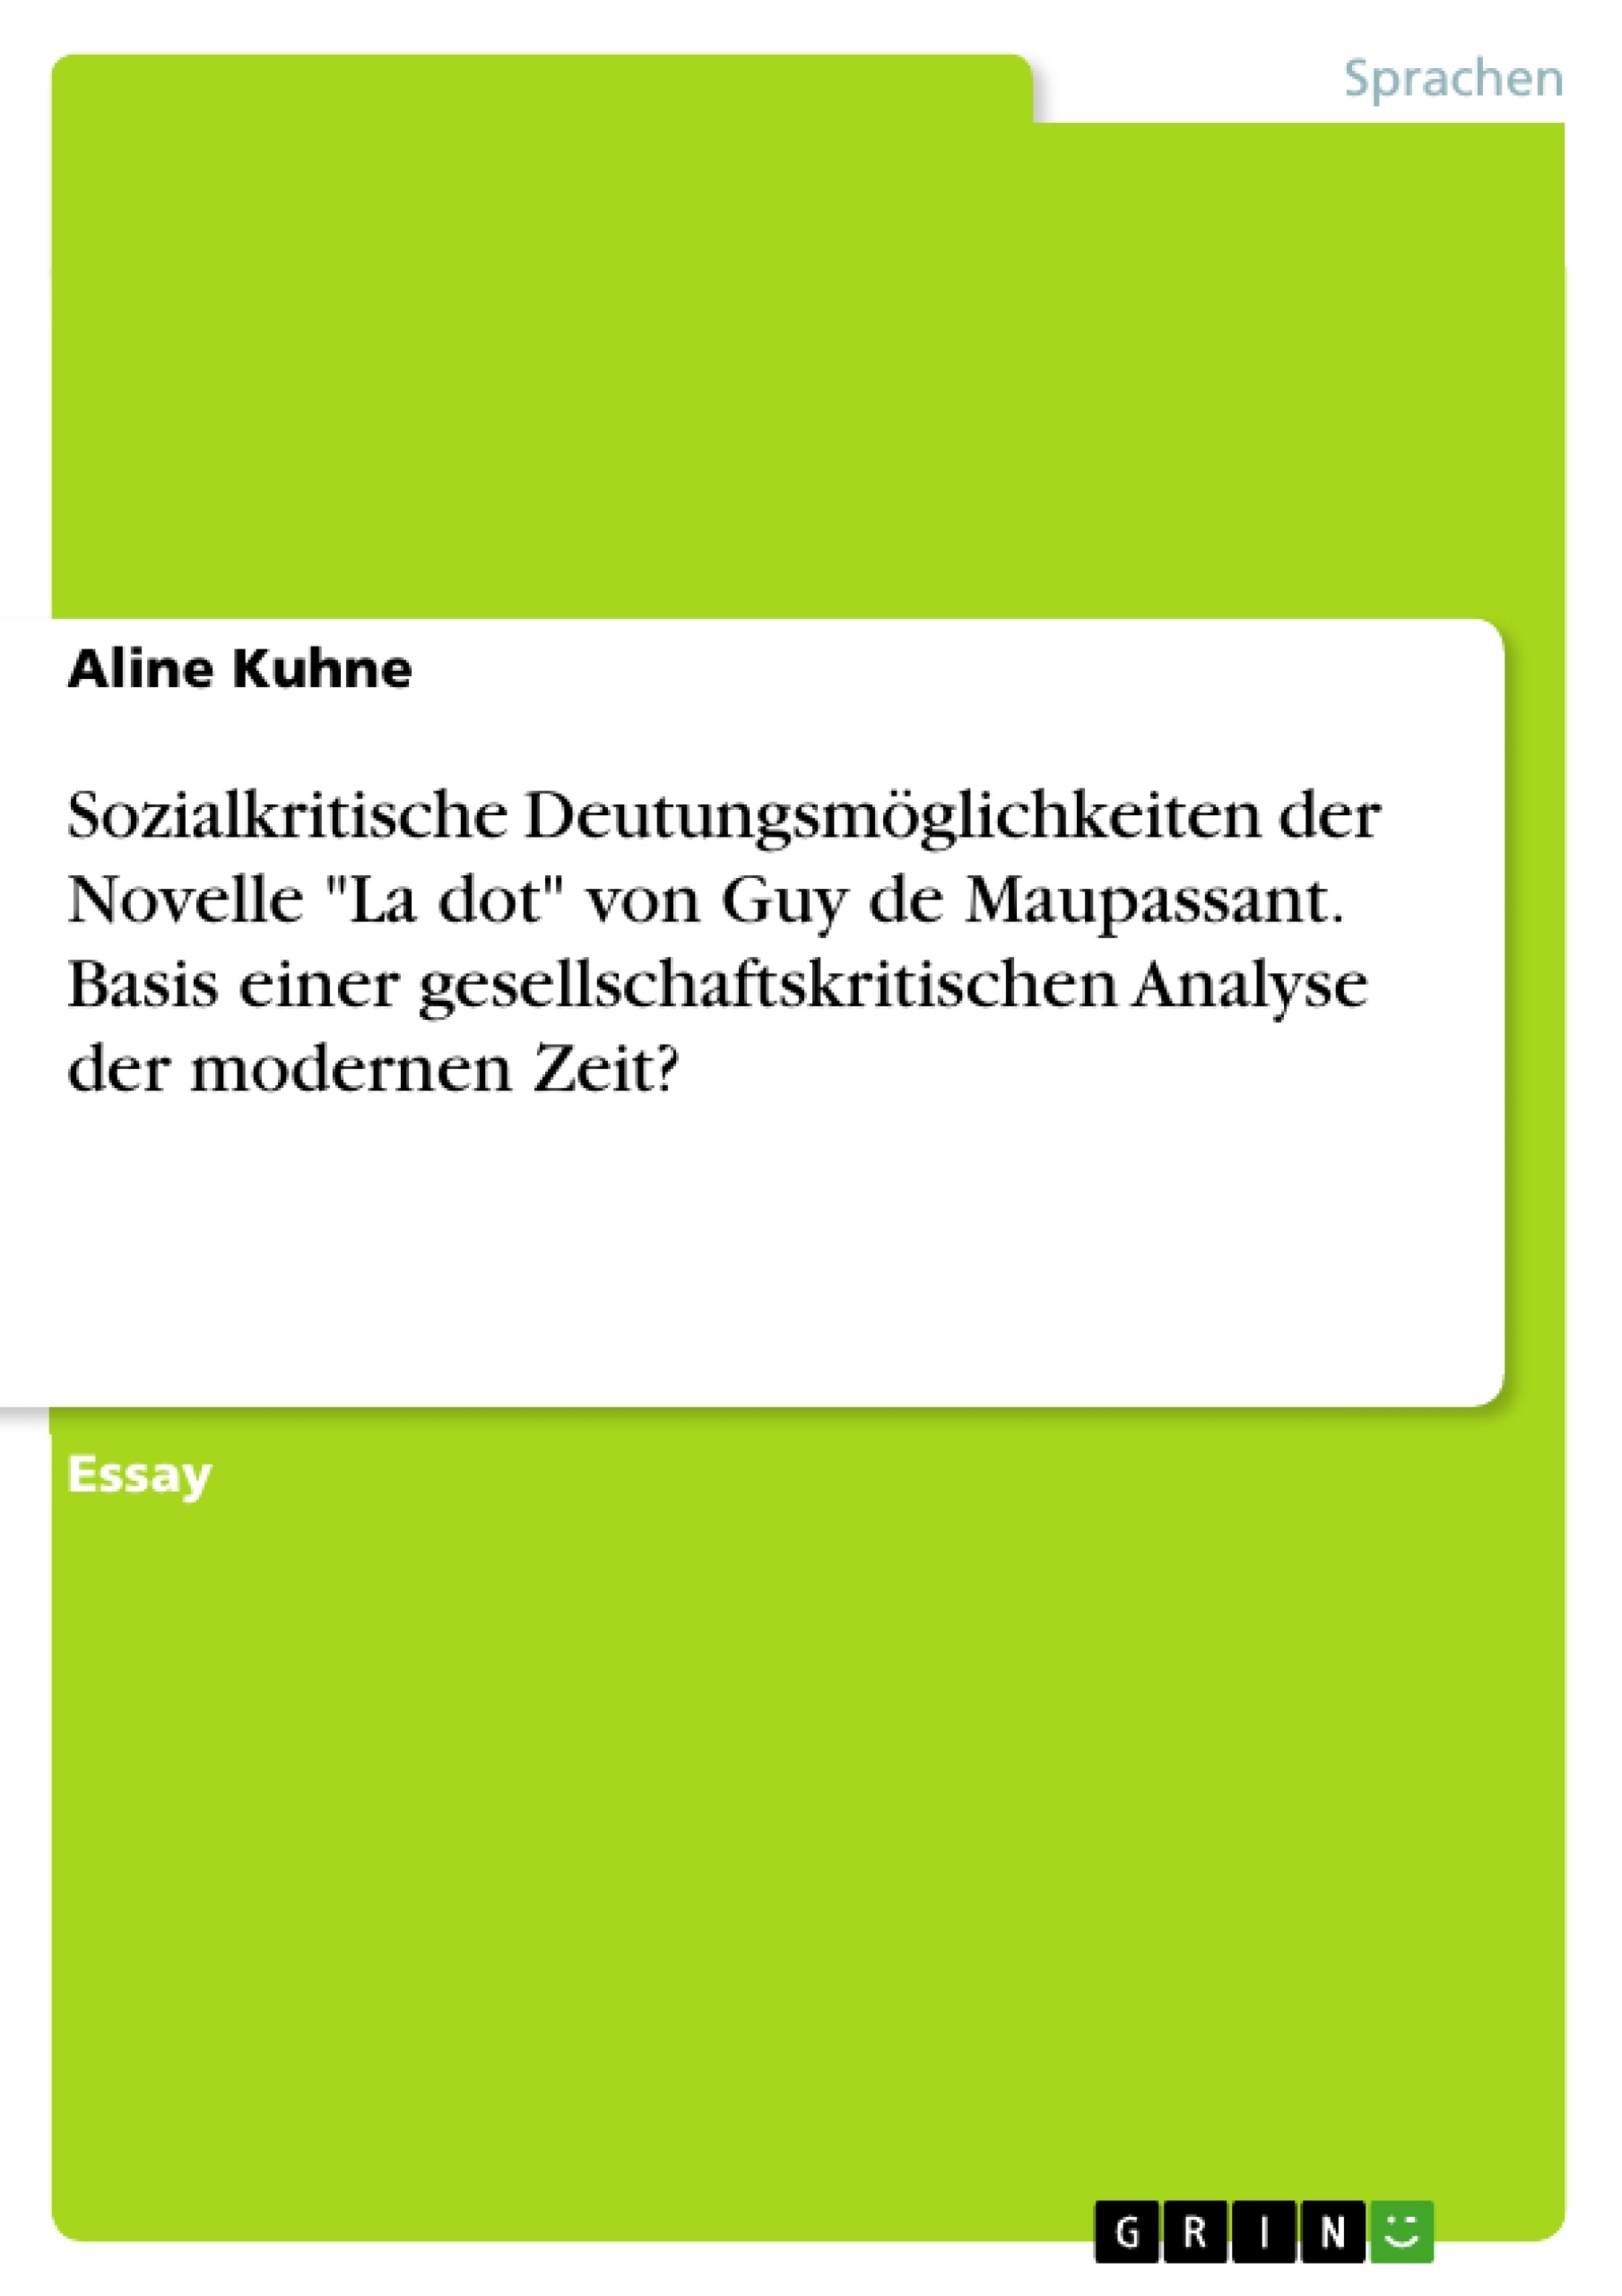 Titre: Sozialkritische Deutungsmöglichkeiten der Novelle "La dot" von Guy de Maupassant. Basis einer gesellschaftskritischen Analyse der modernen Zeit?